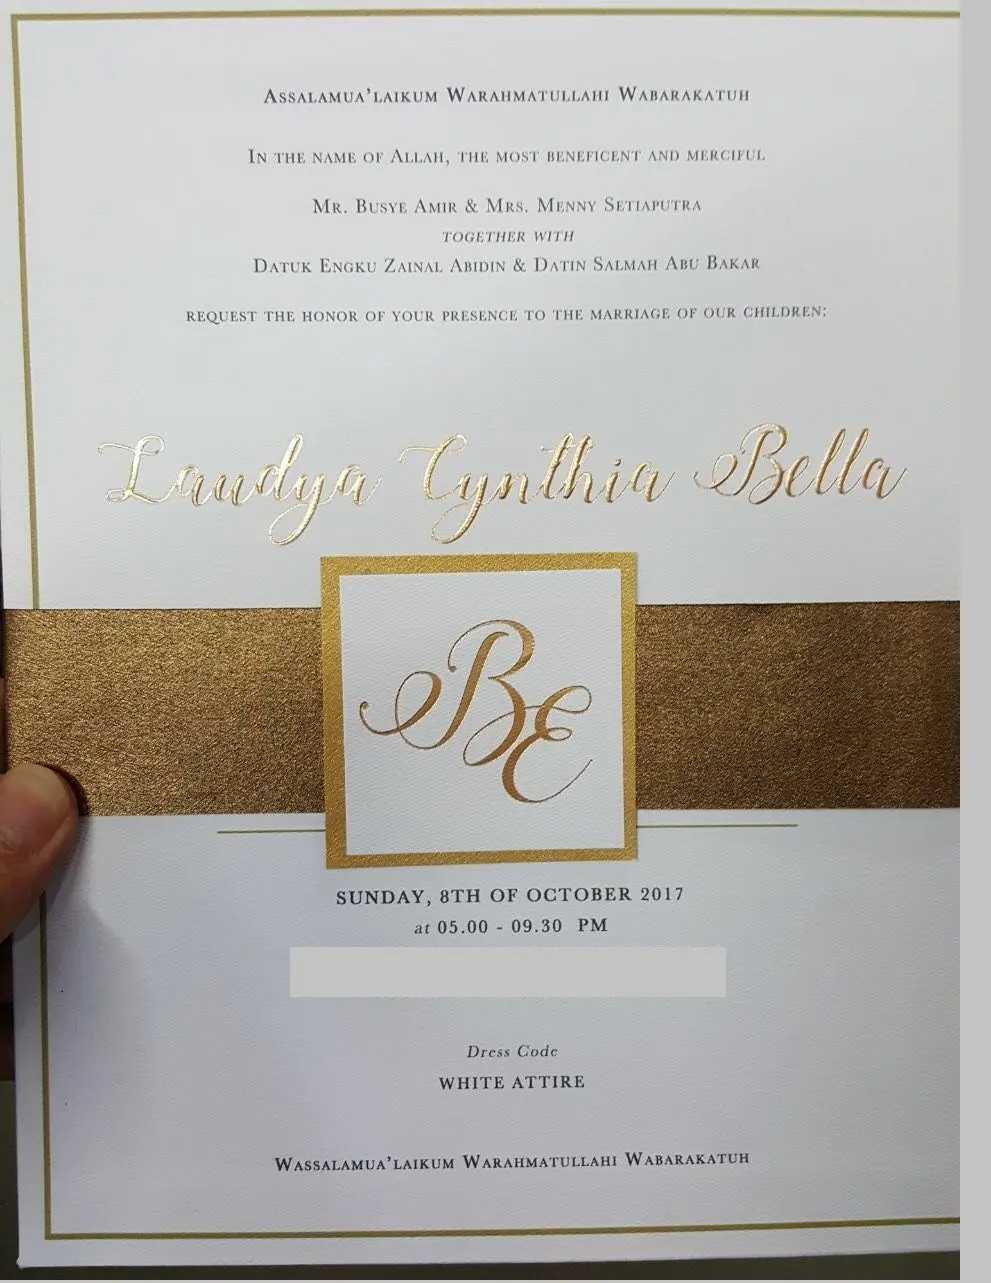 Laudya Cynthia Bella gelar pernikahan di Bandung (Foto: Istimewa)